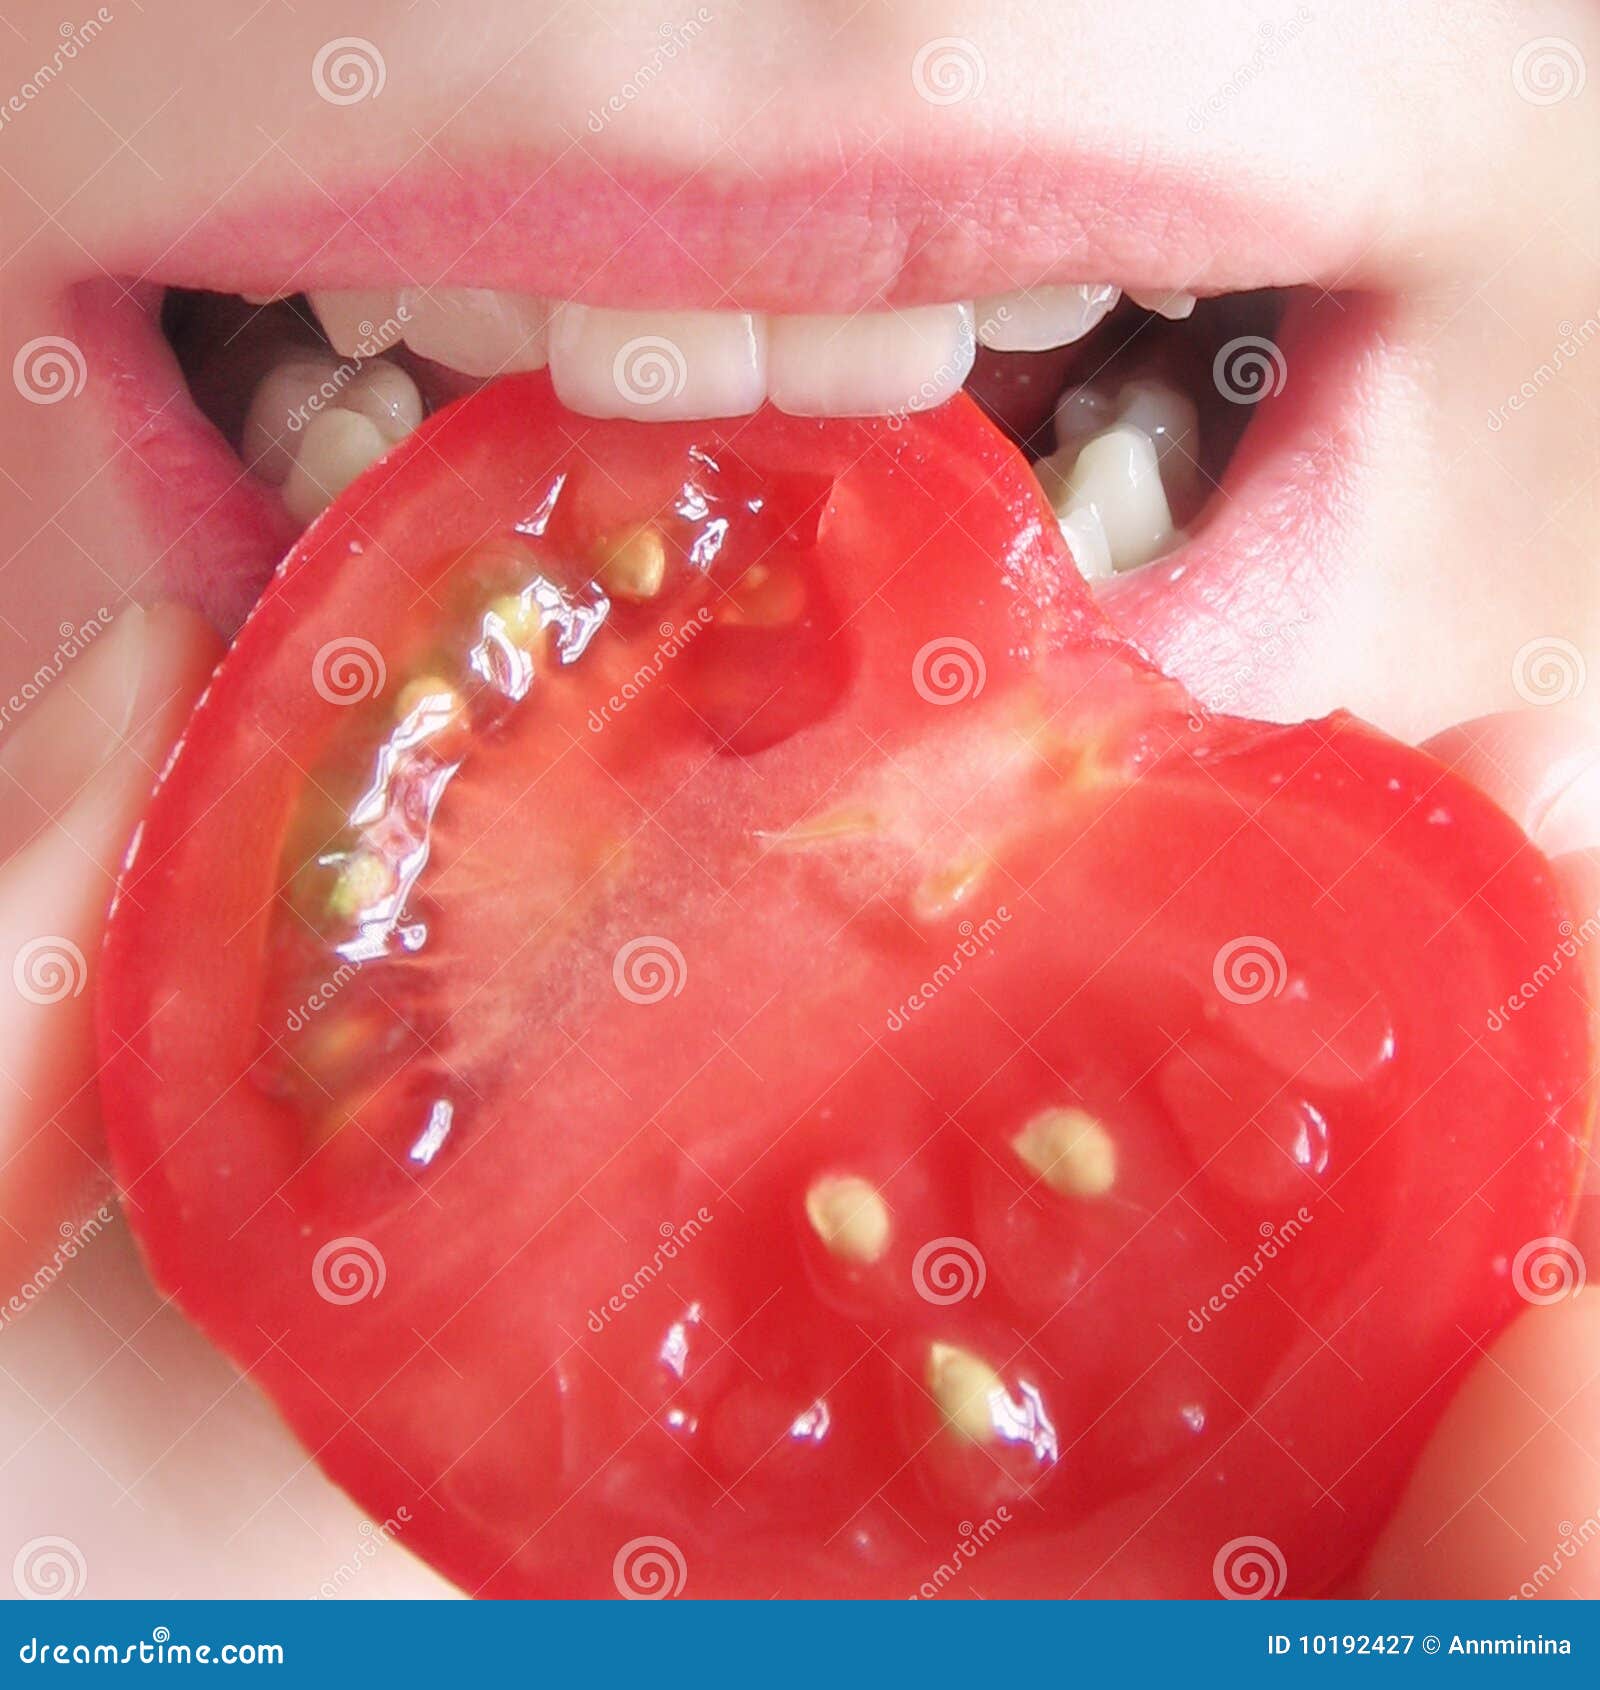 taste a tomato